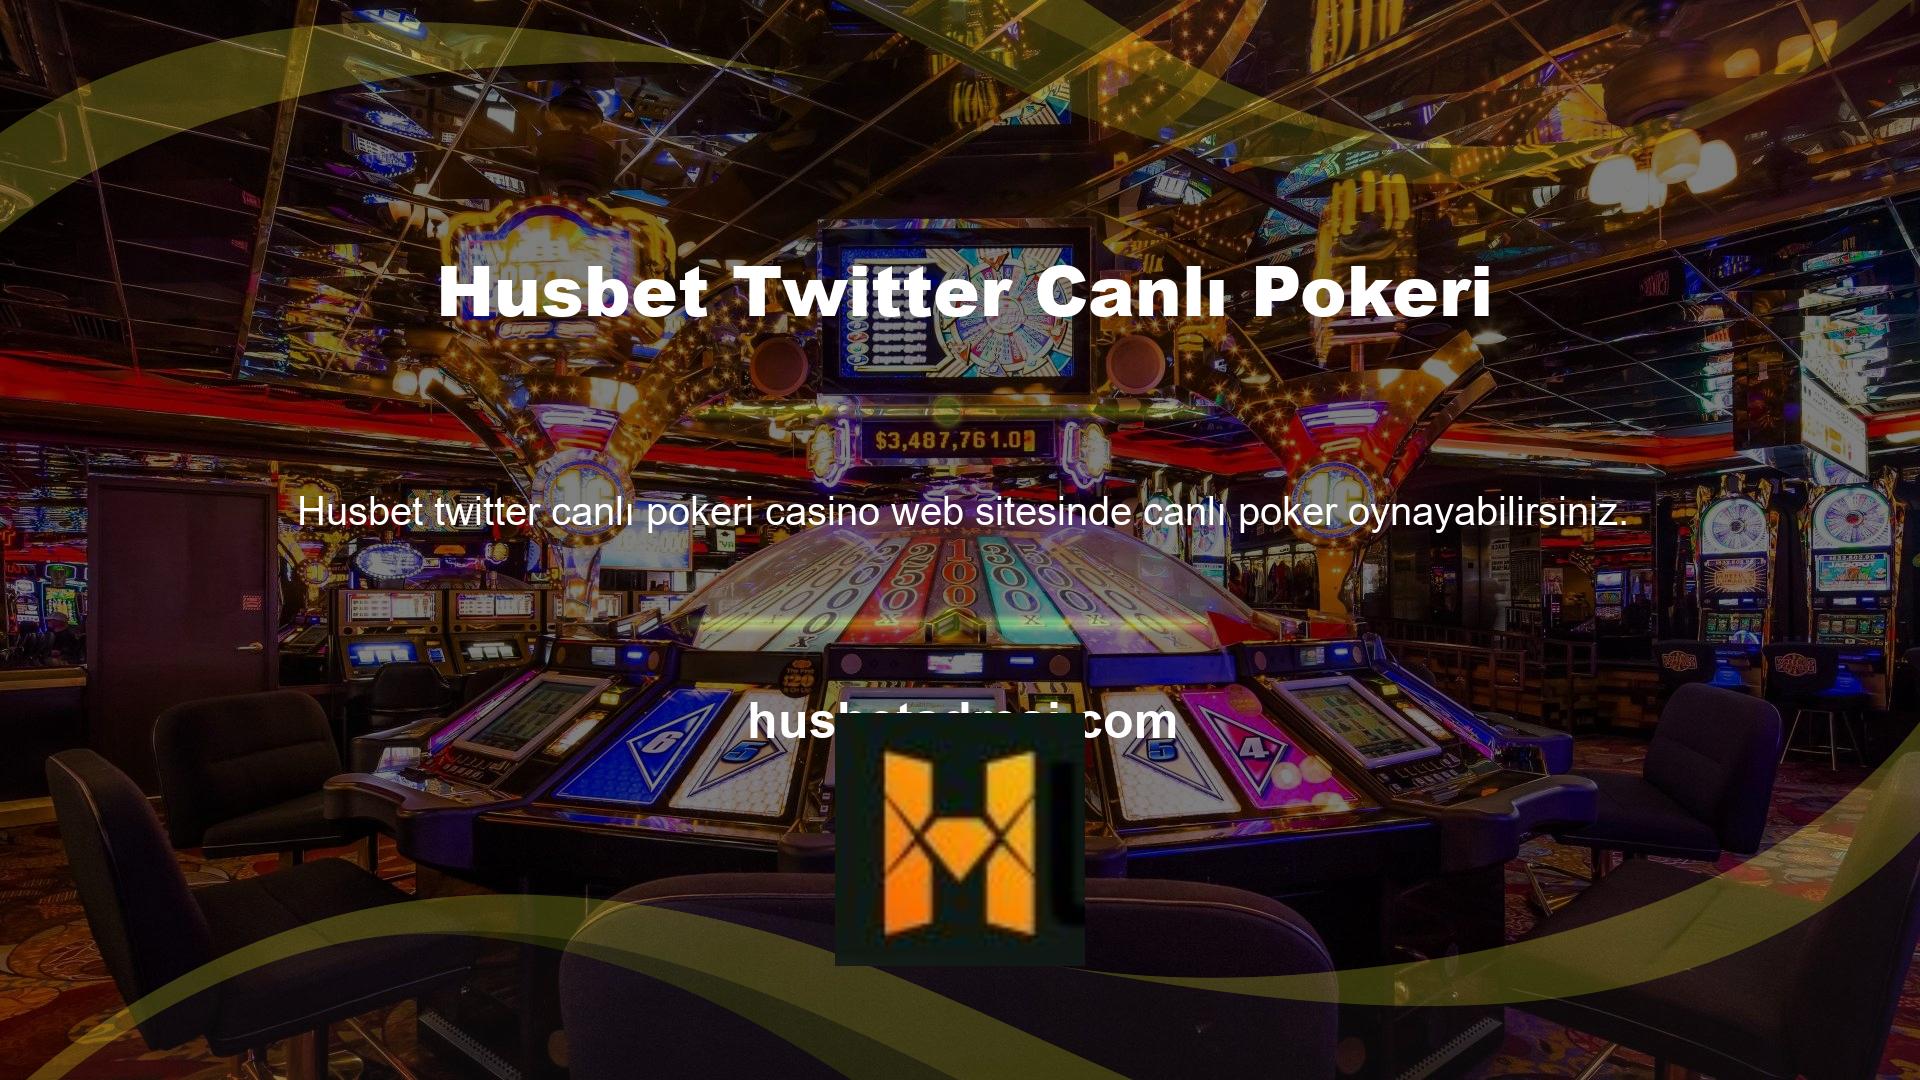 Bu sitede tüm zamanların en popüler casino oyunlarından biri olan poker bulunmaktadır